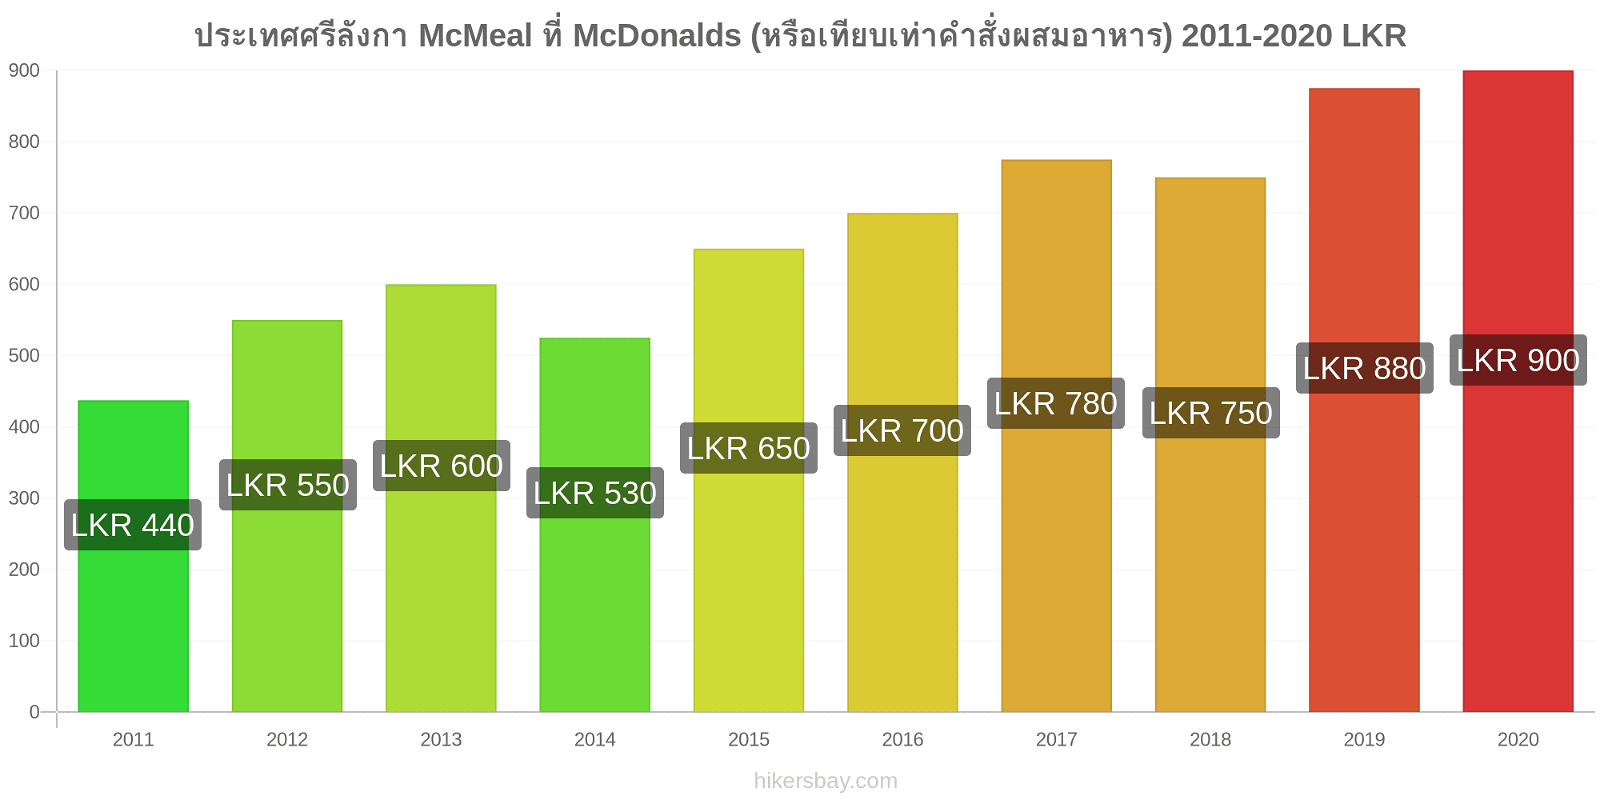 ประเทศศรีลังกา การเปลี่ยนแปลงราคา McMeal ที่ McDonalds (หรือเทียบเท่าคำสั่งผสมอาหาร) hikersbay.com